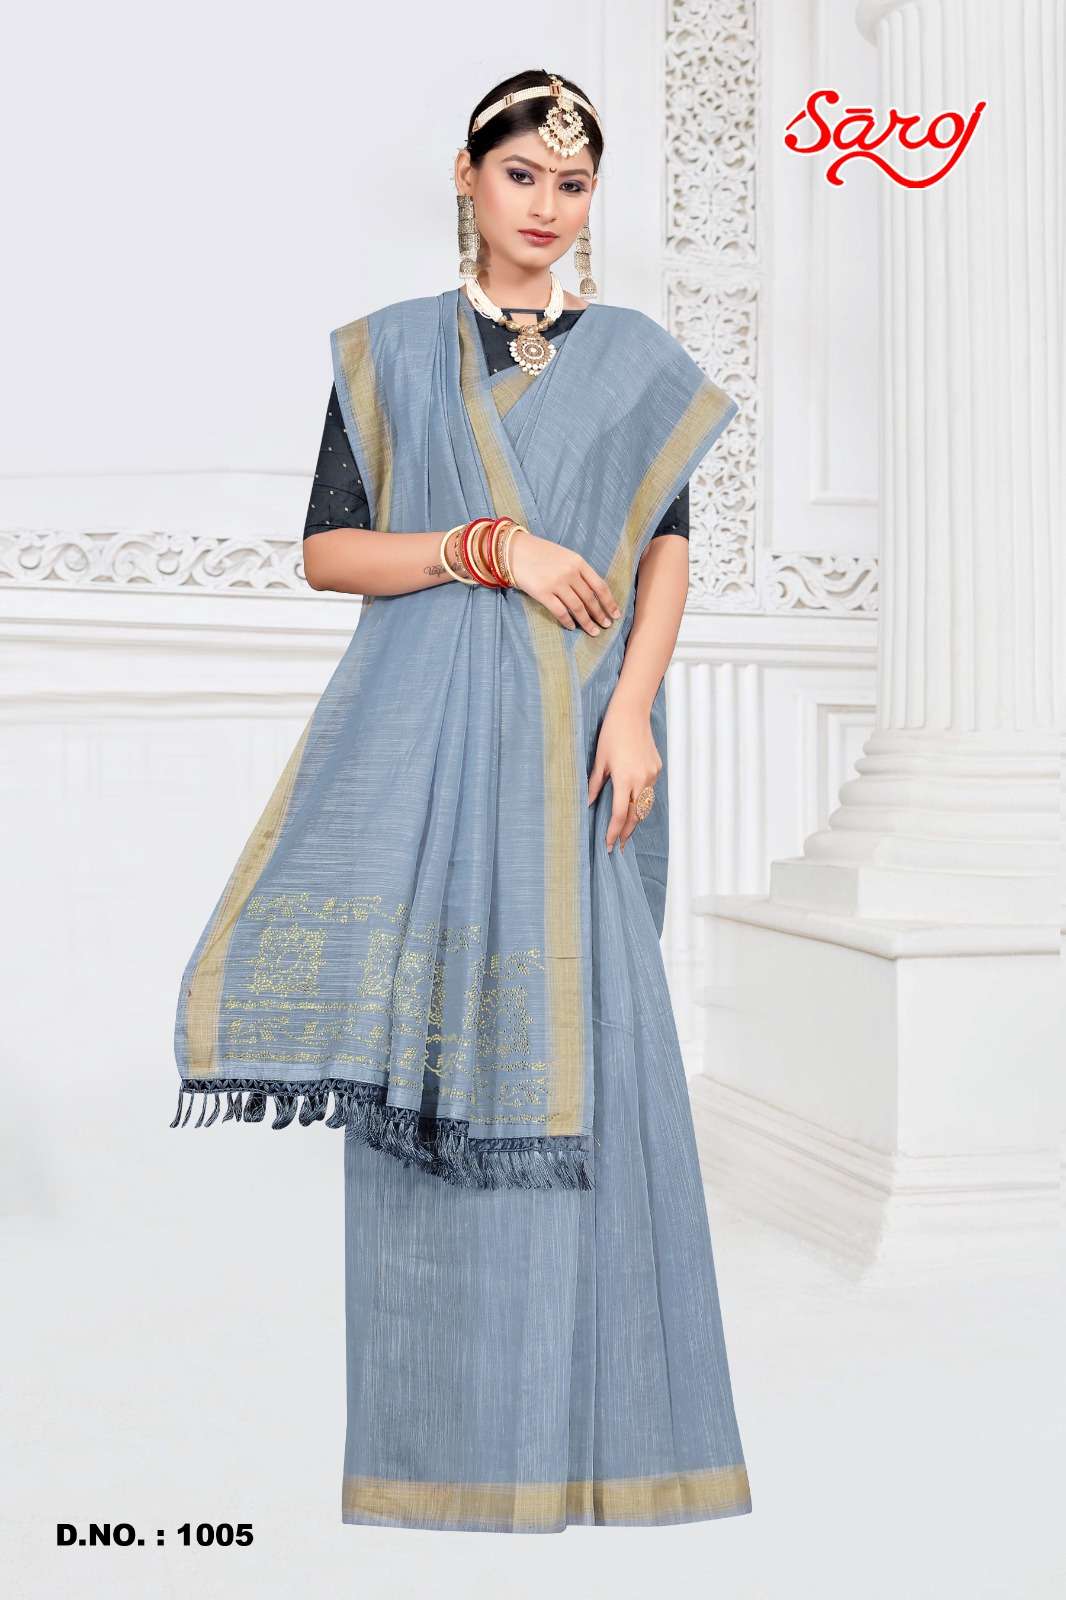 Saroj textile presents Mahotsav vol-1 cotton sarees catalogue